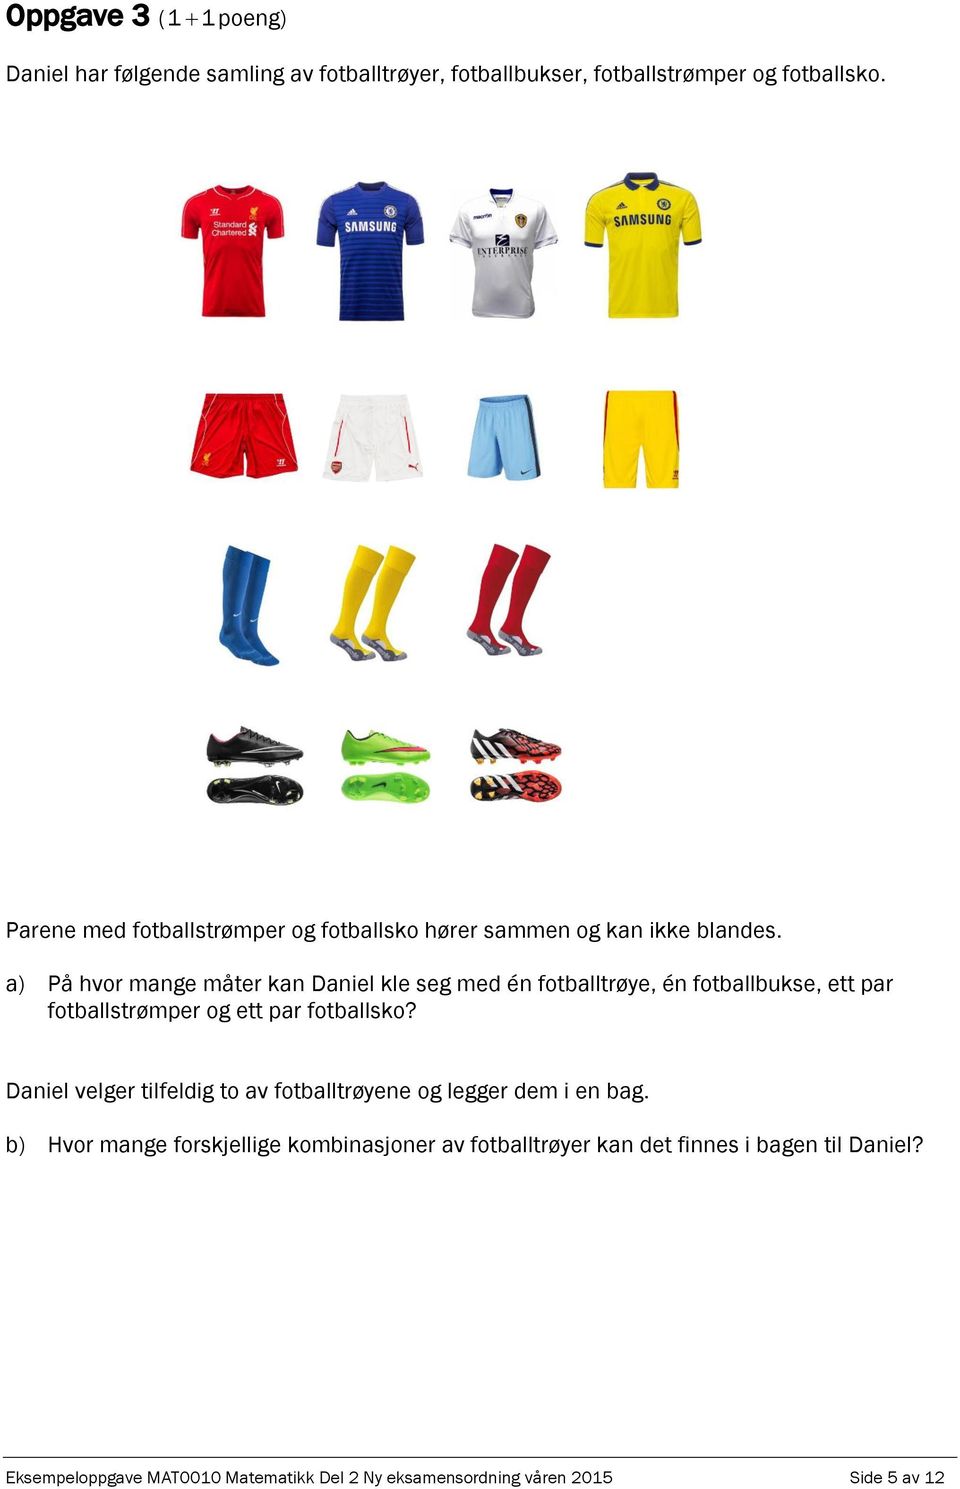 a) På hvor mange måter kan Daniel kle seg med én fotballtrøye, én fotballbukse, ett par fotballstrømper og ett par fotballsko?